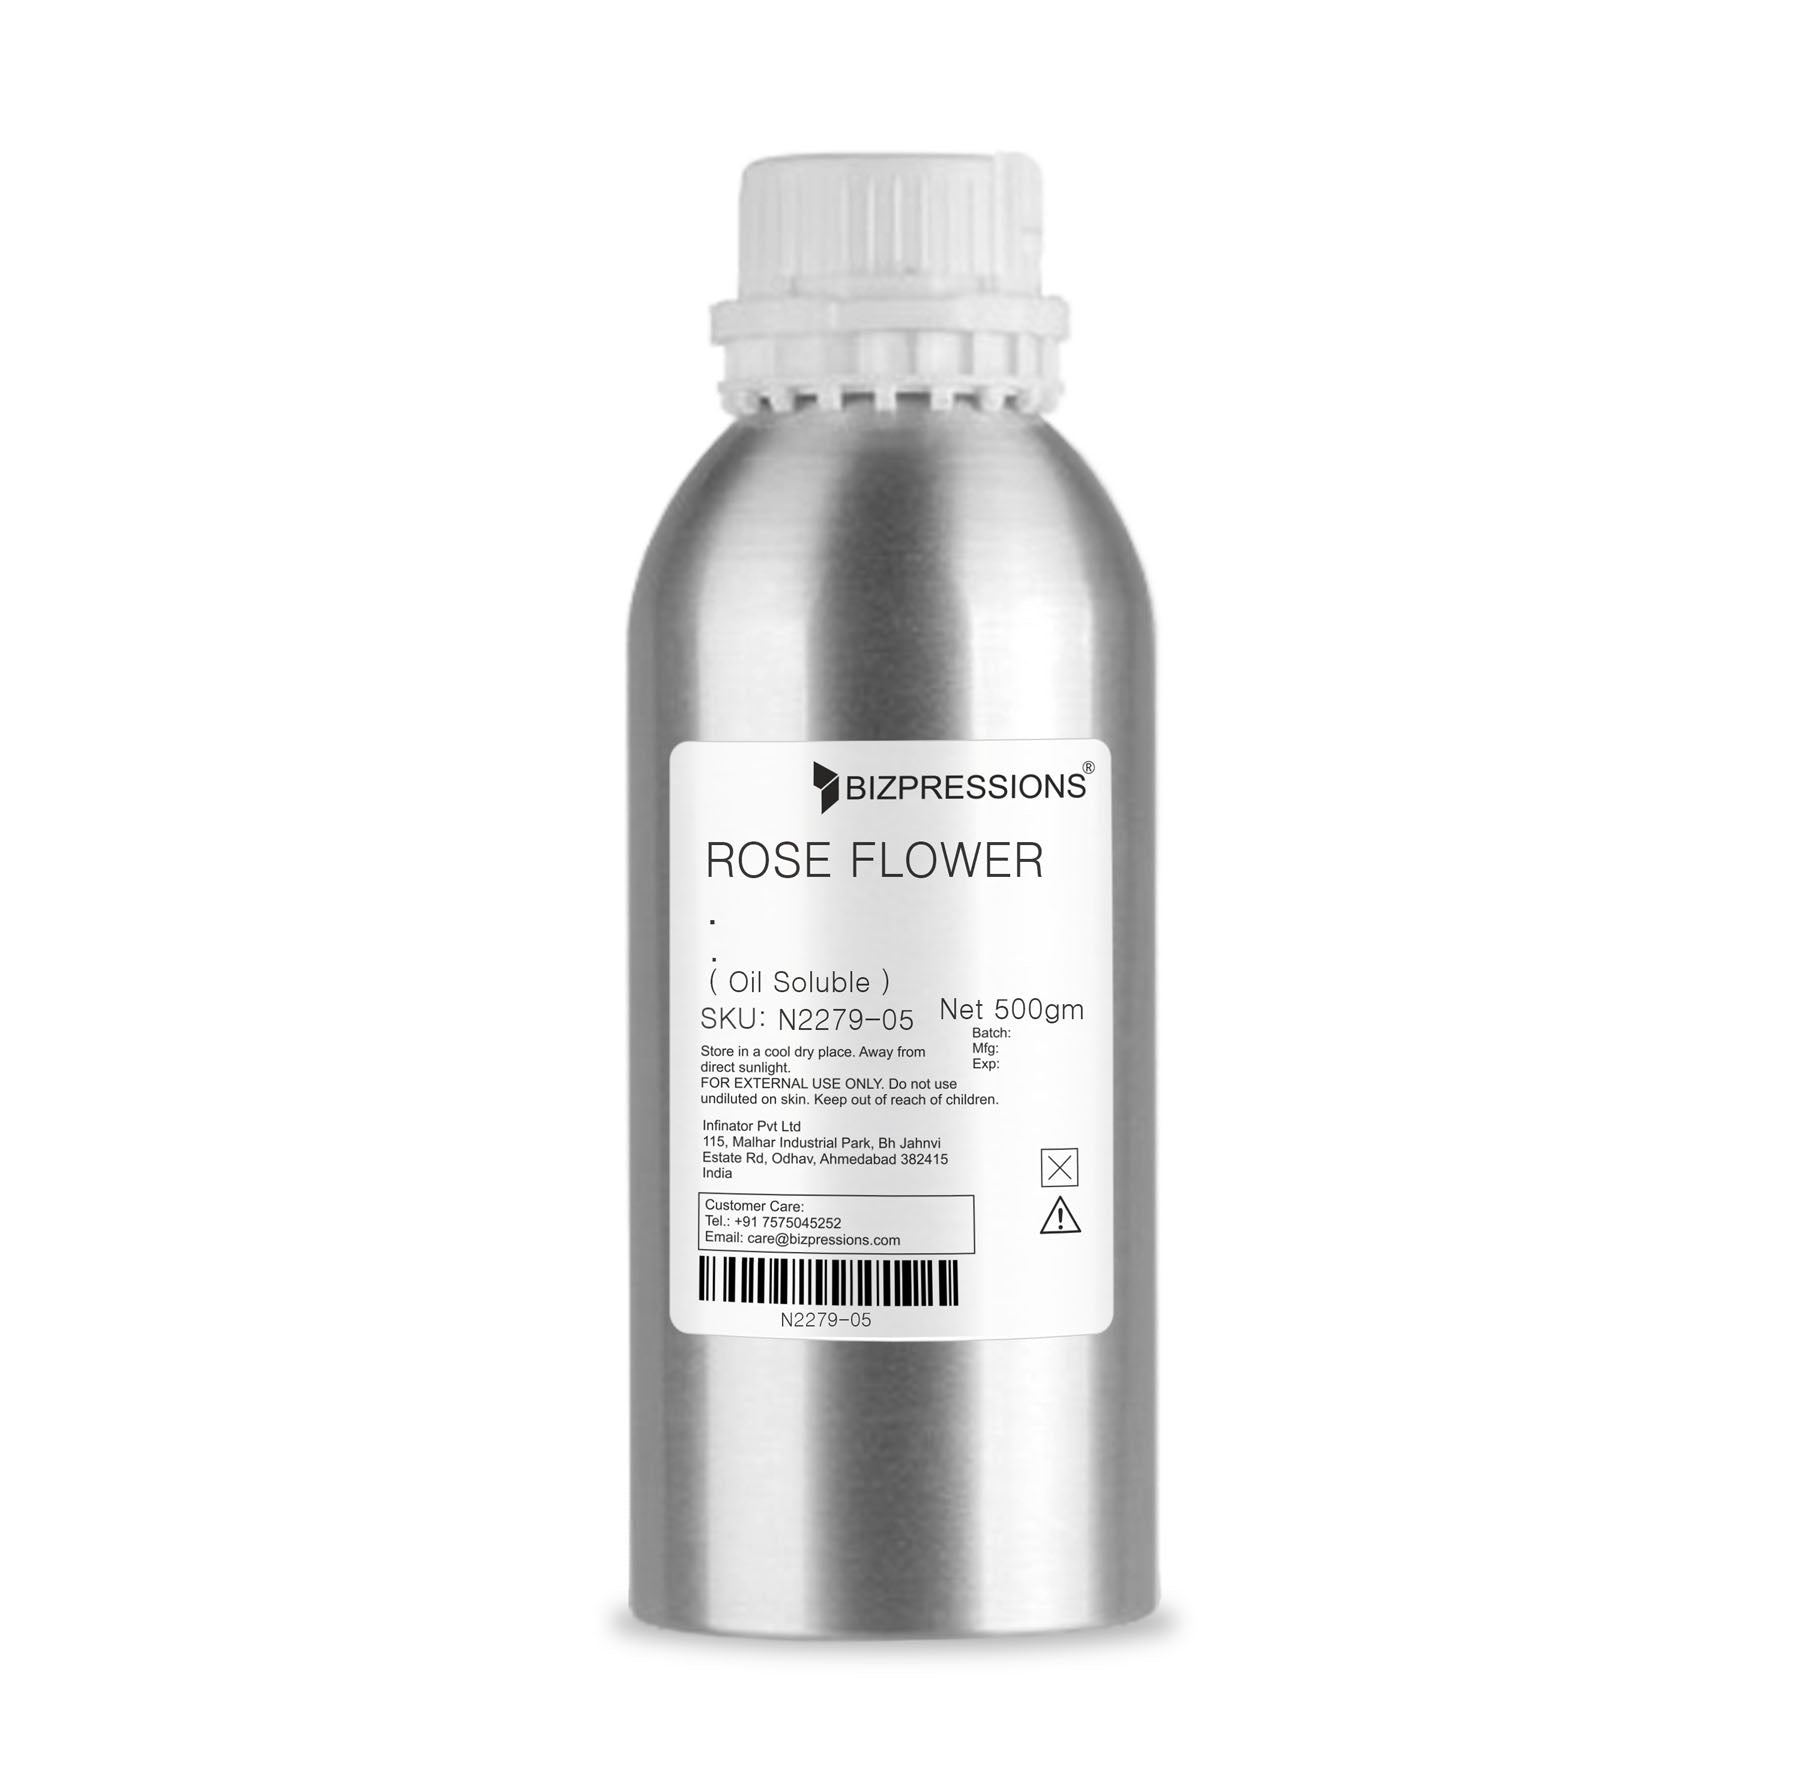 ROSE FLOWER - Fragrance ( Oil Soluble ) - 500 gm